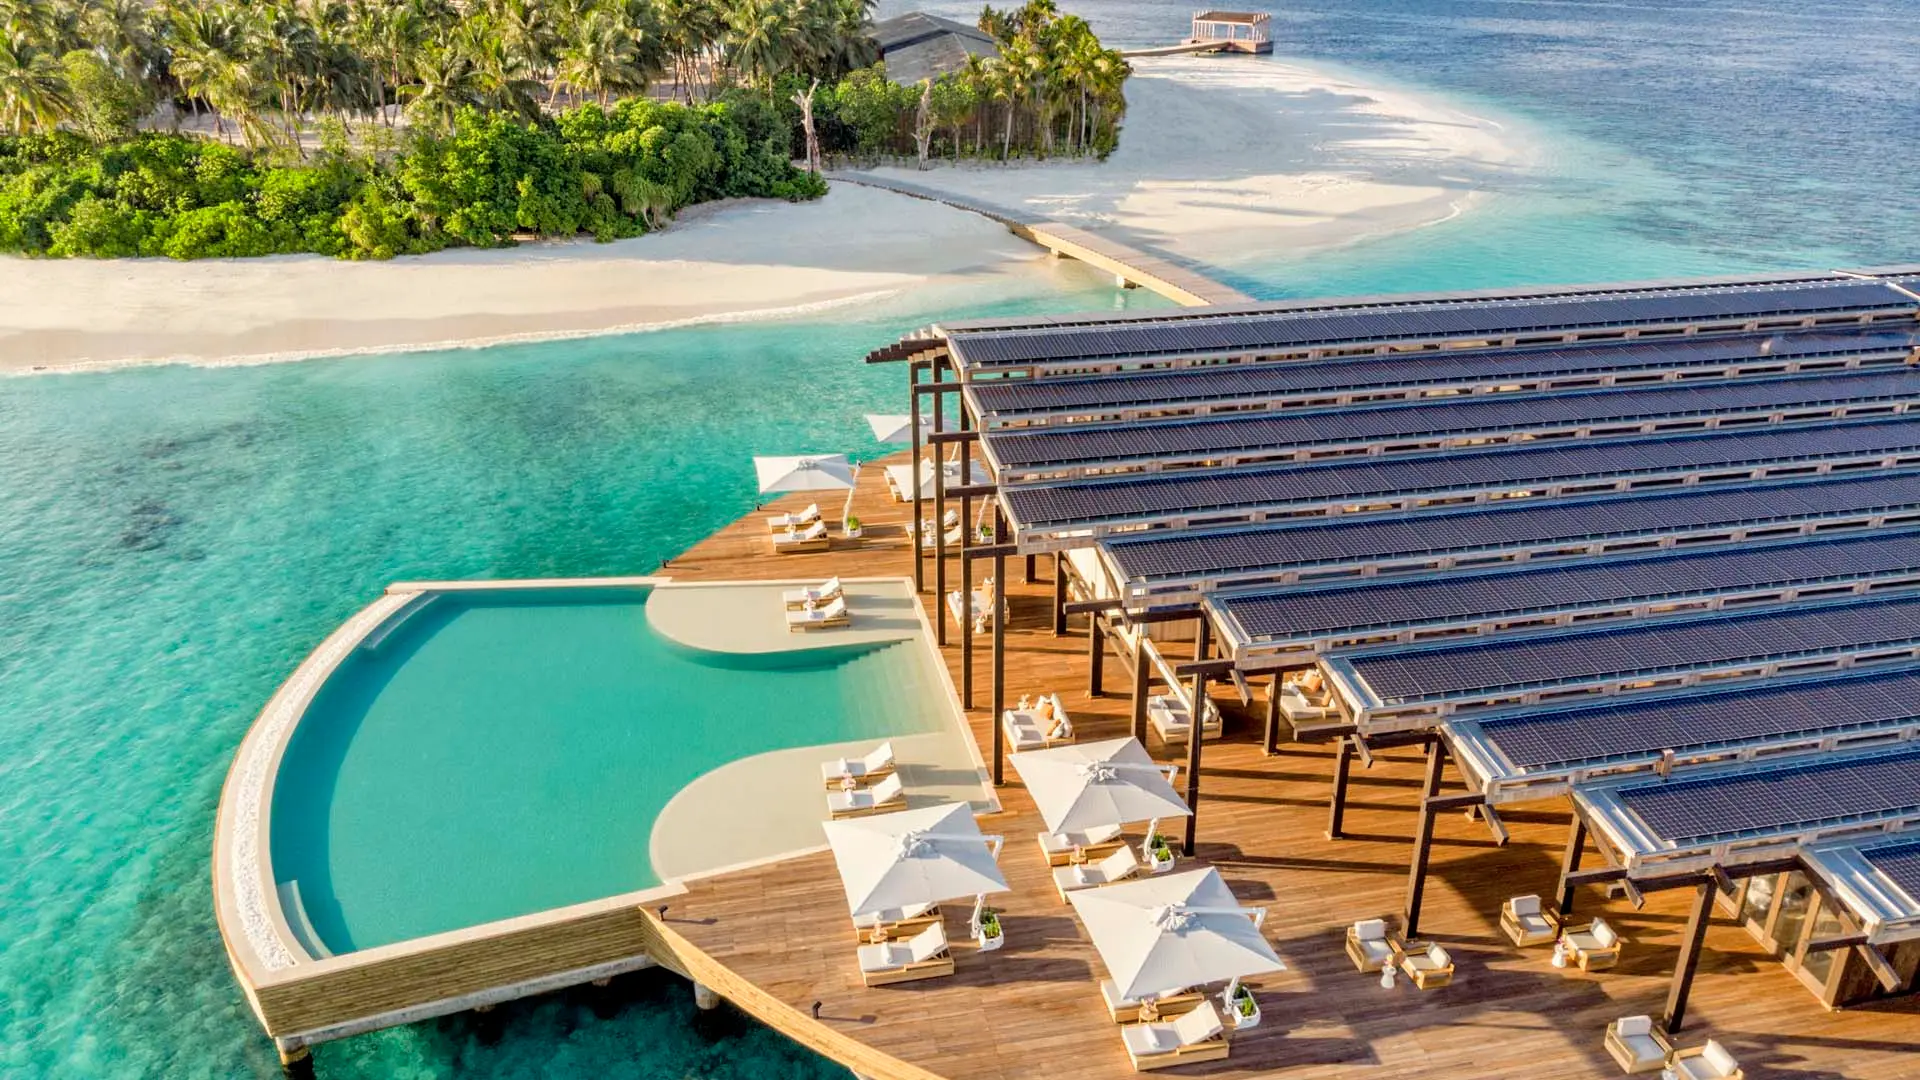 Hotel review Service & Facilities' - Kudadoo Maldives Private Island - 9